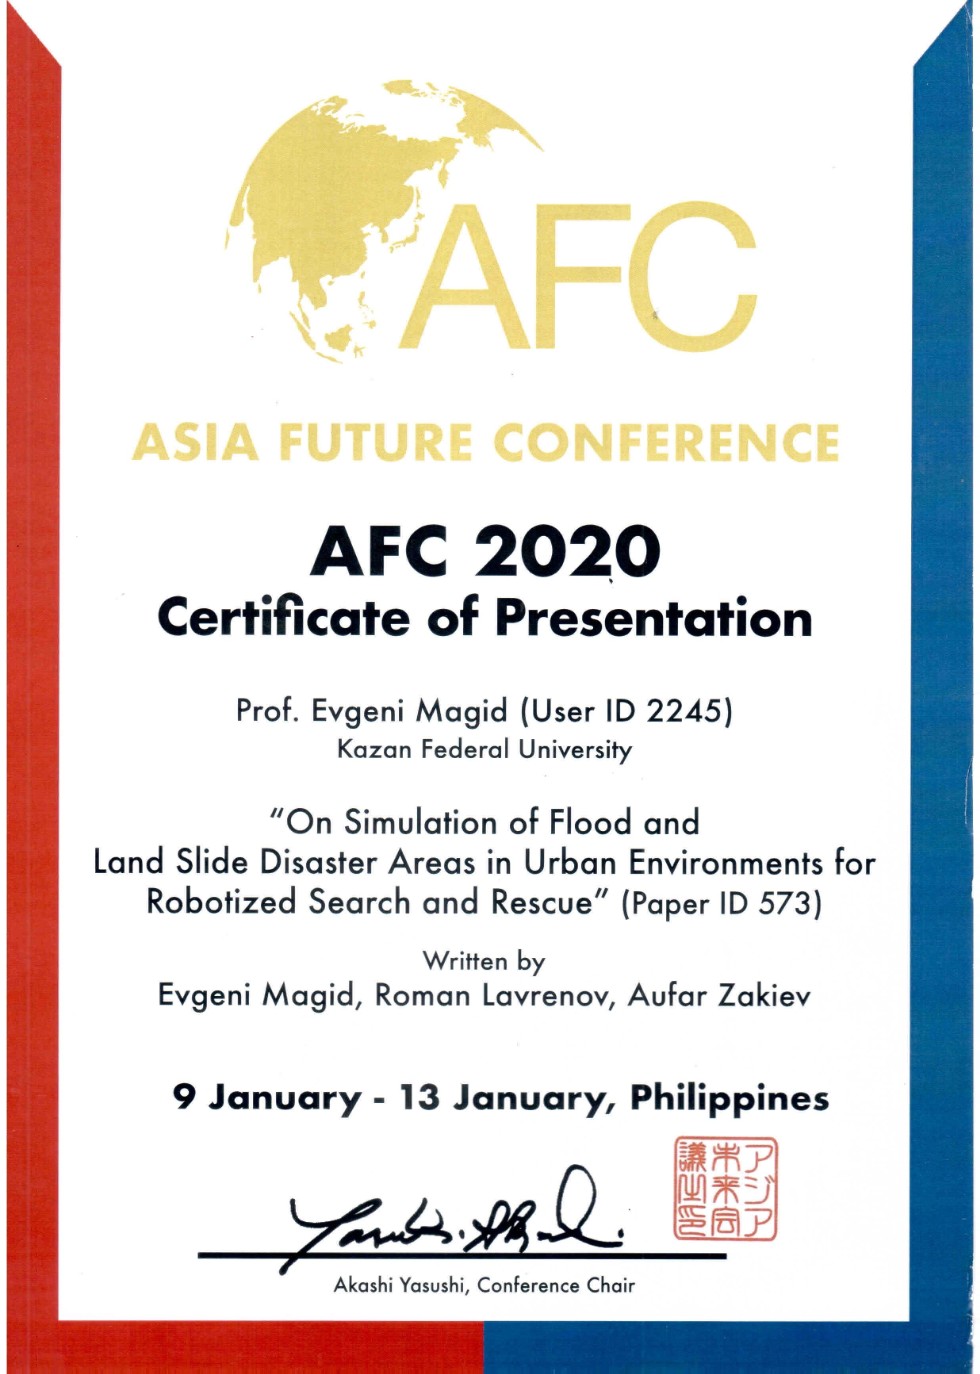           V   Asia Future Conference